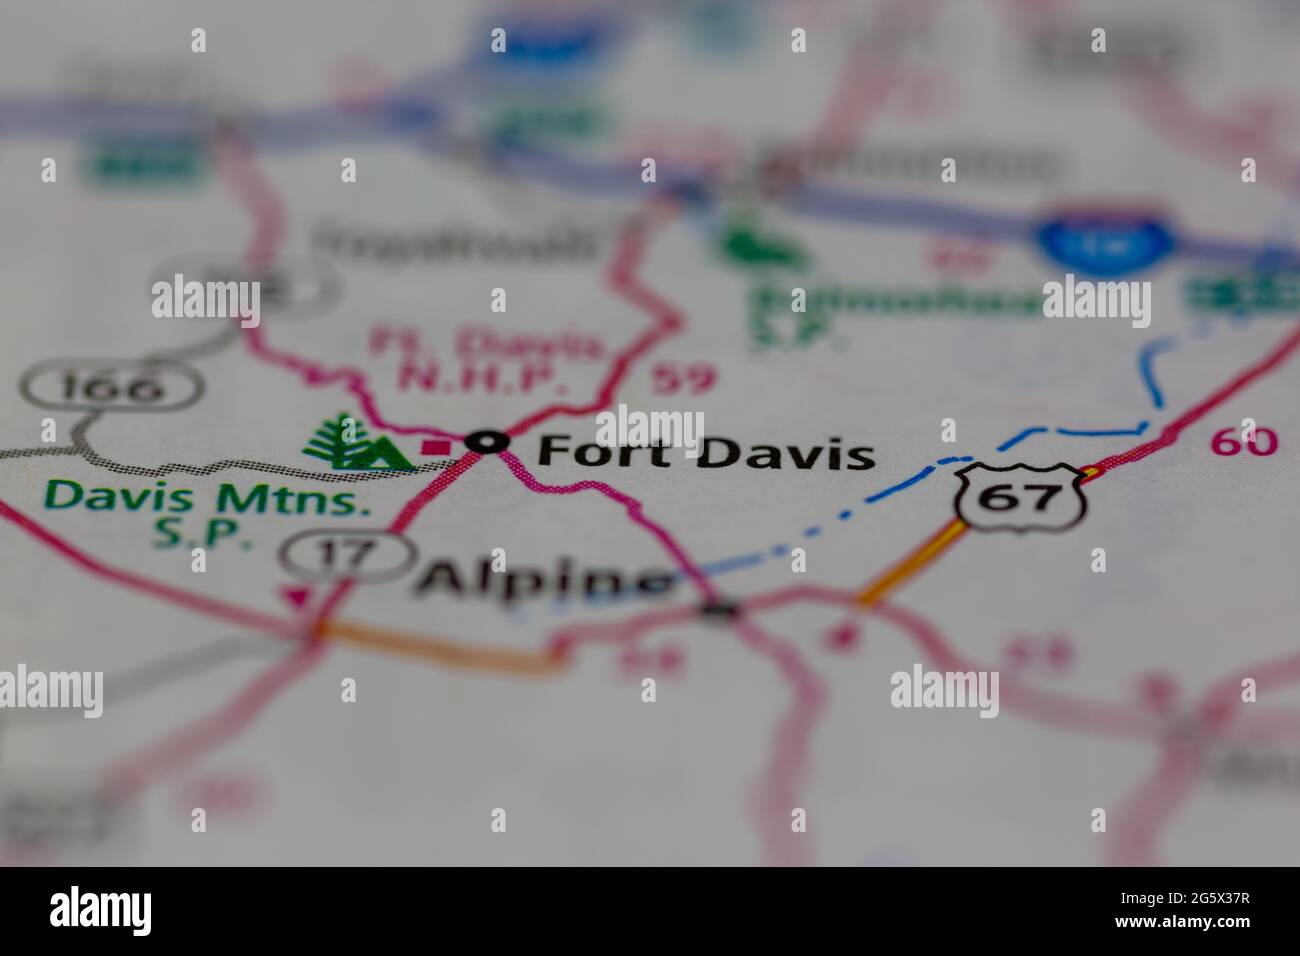 Fort Davis Texas USA mostrato su una mappa geografica o su una mappa stradale Foto Stock